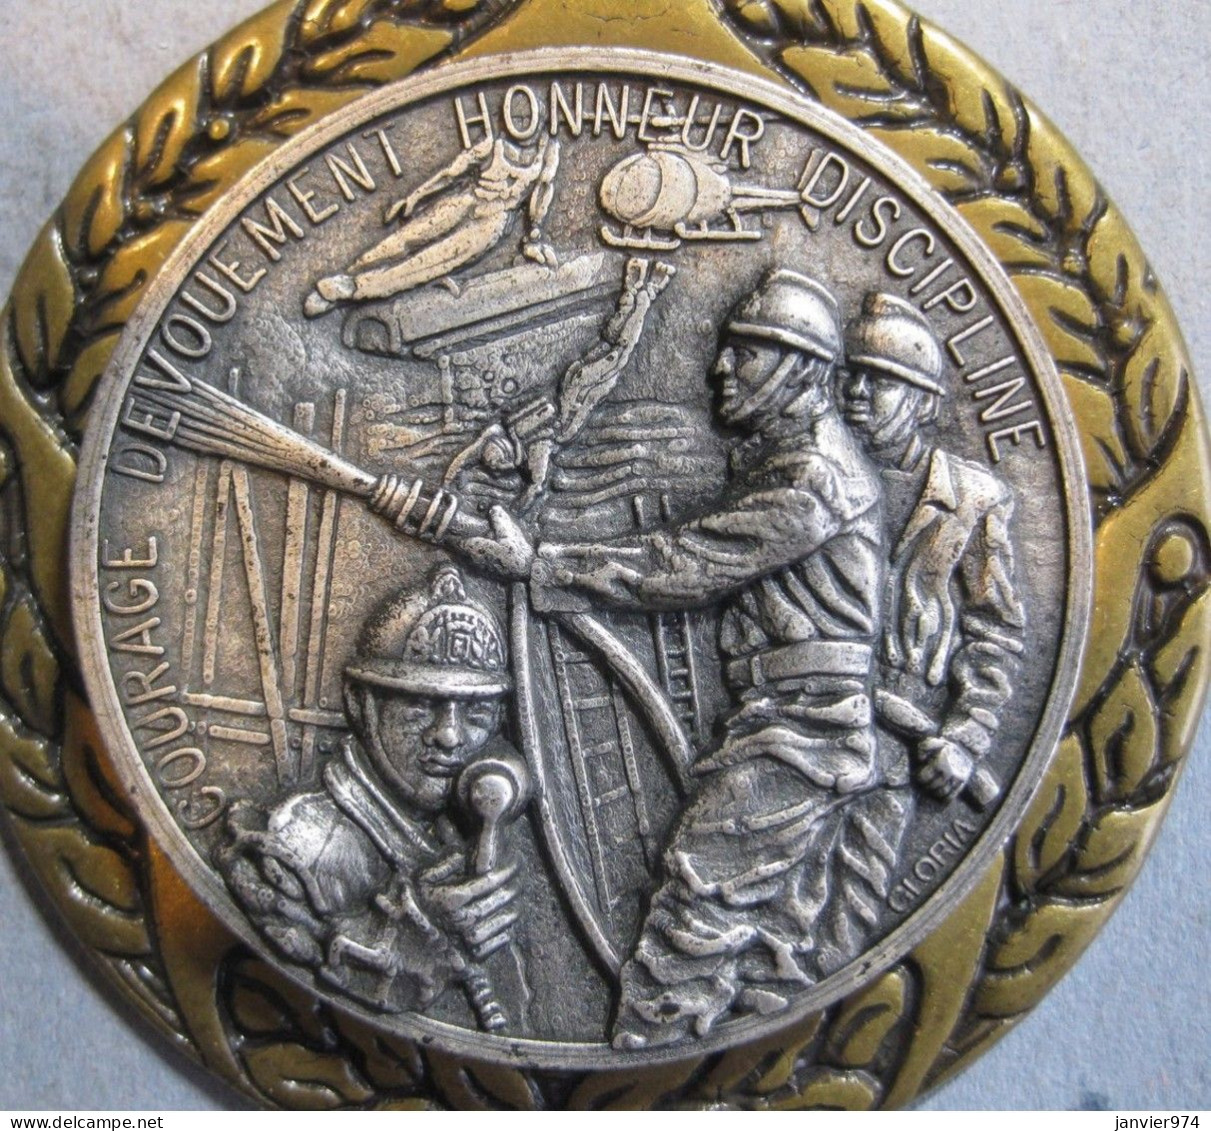 Tres Belle Applique En Bronze , Medaille Pompiers , Courage , Dévouement , Honneur , Discipline Par Gloria - Bombero